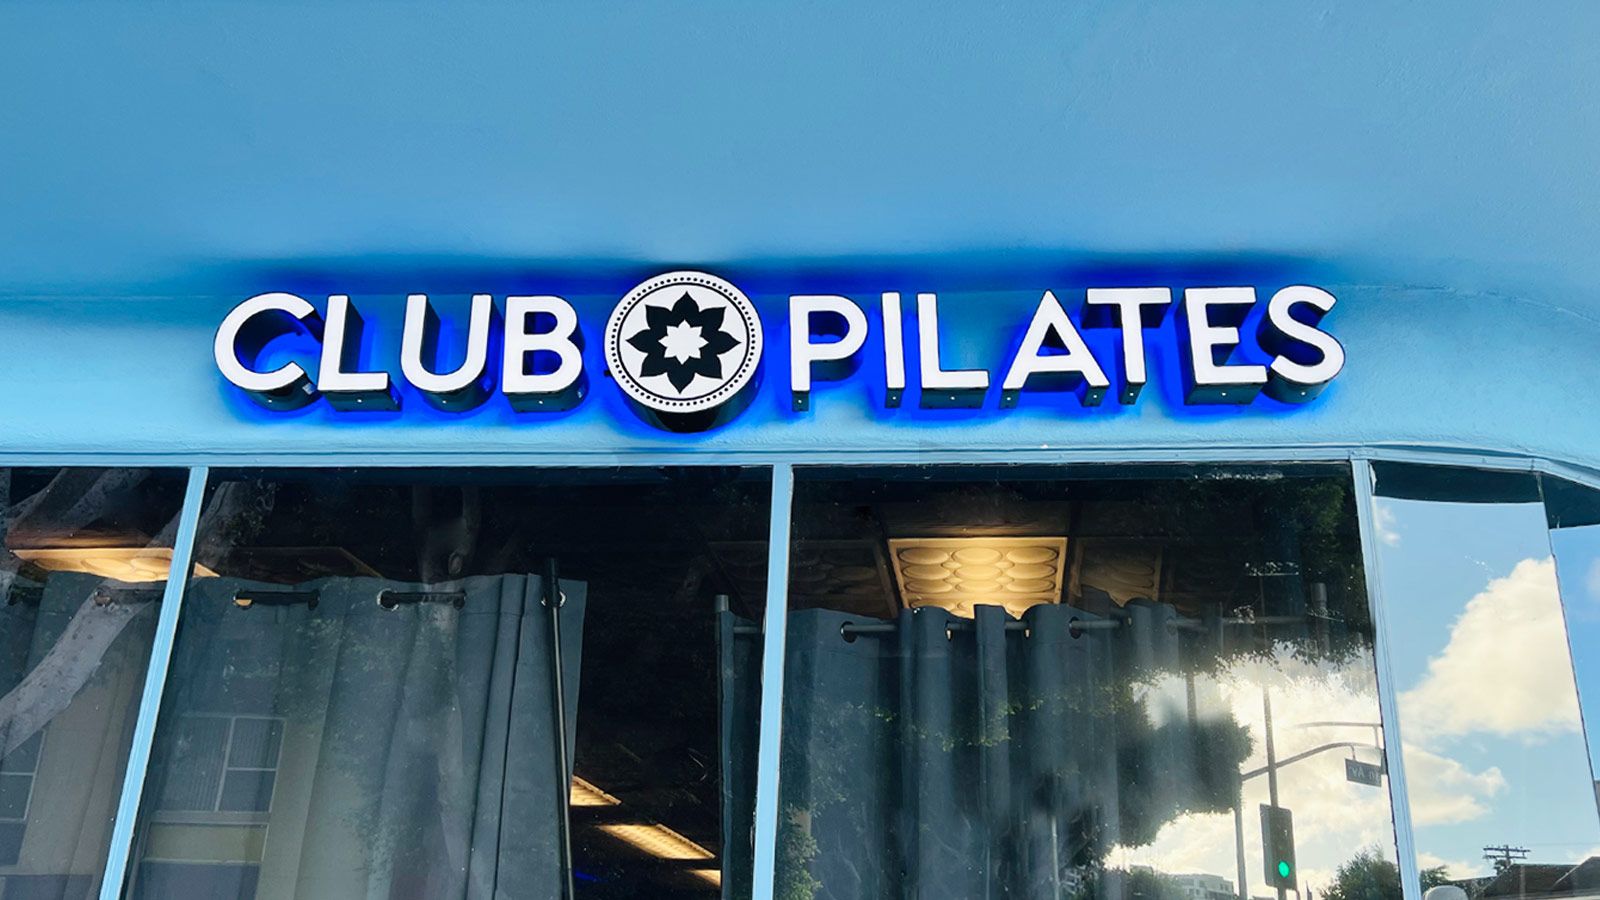 Club Pilates bespoke reverse channel letters